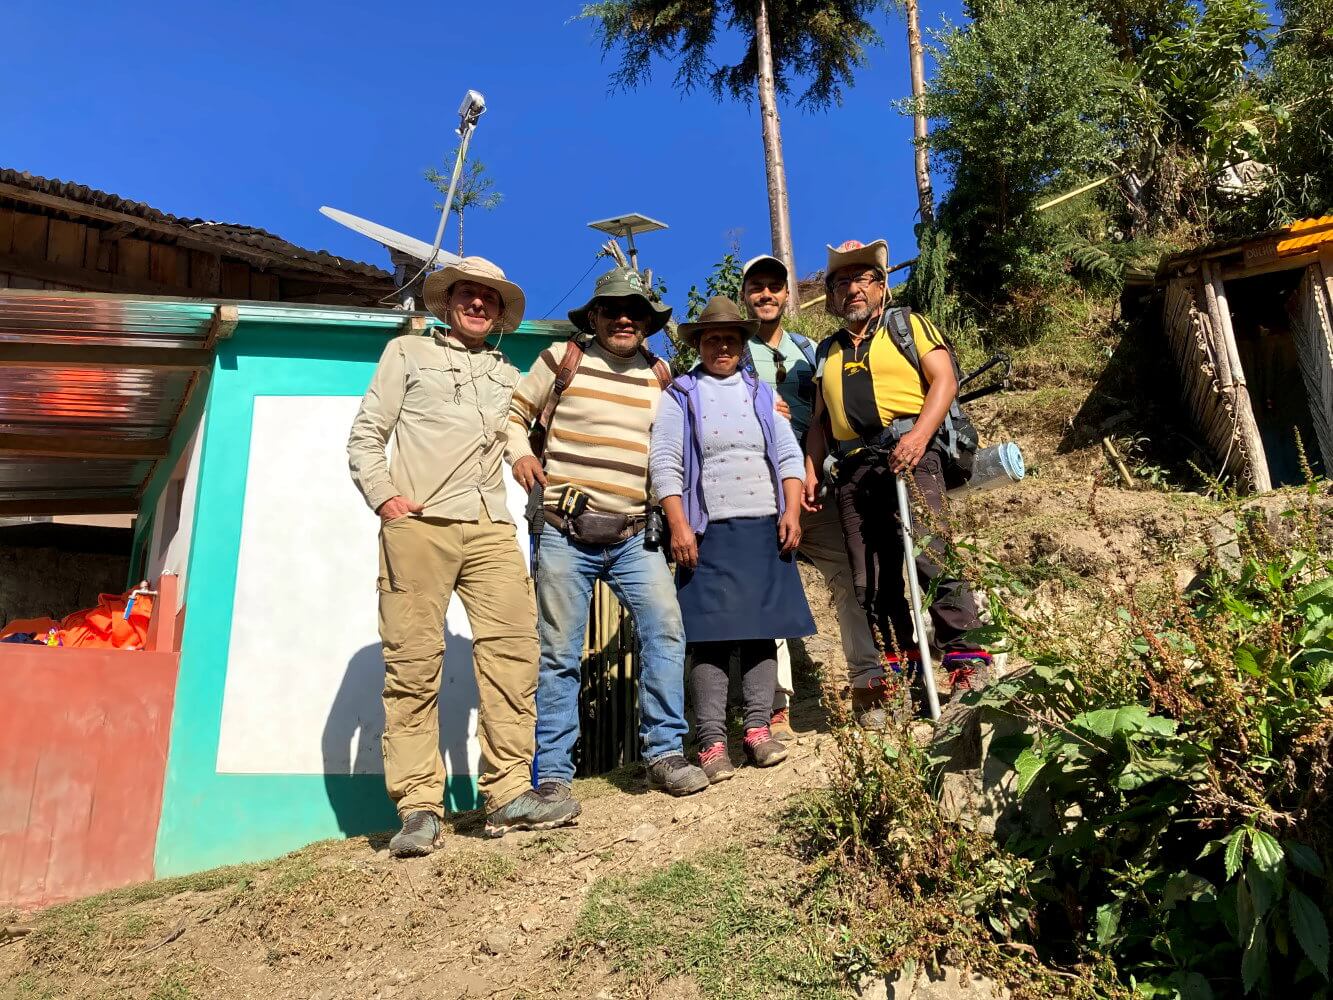 Erinnerungsfoto mit Wanderern in Maizal auf dem Choquequirao Trek.